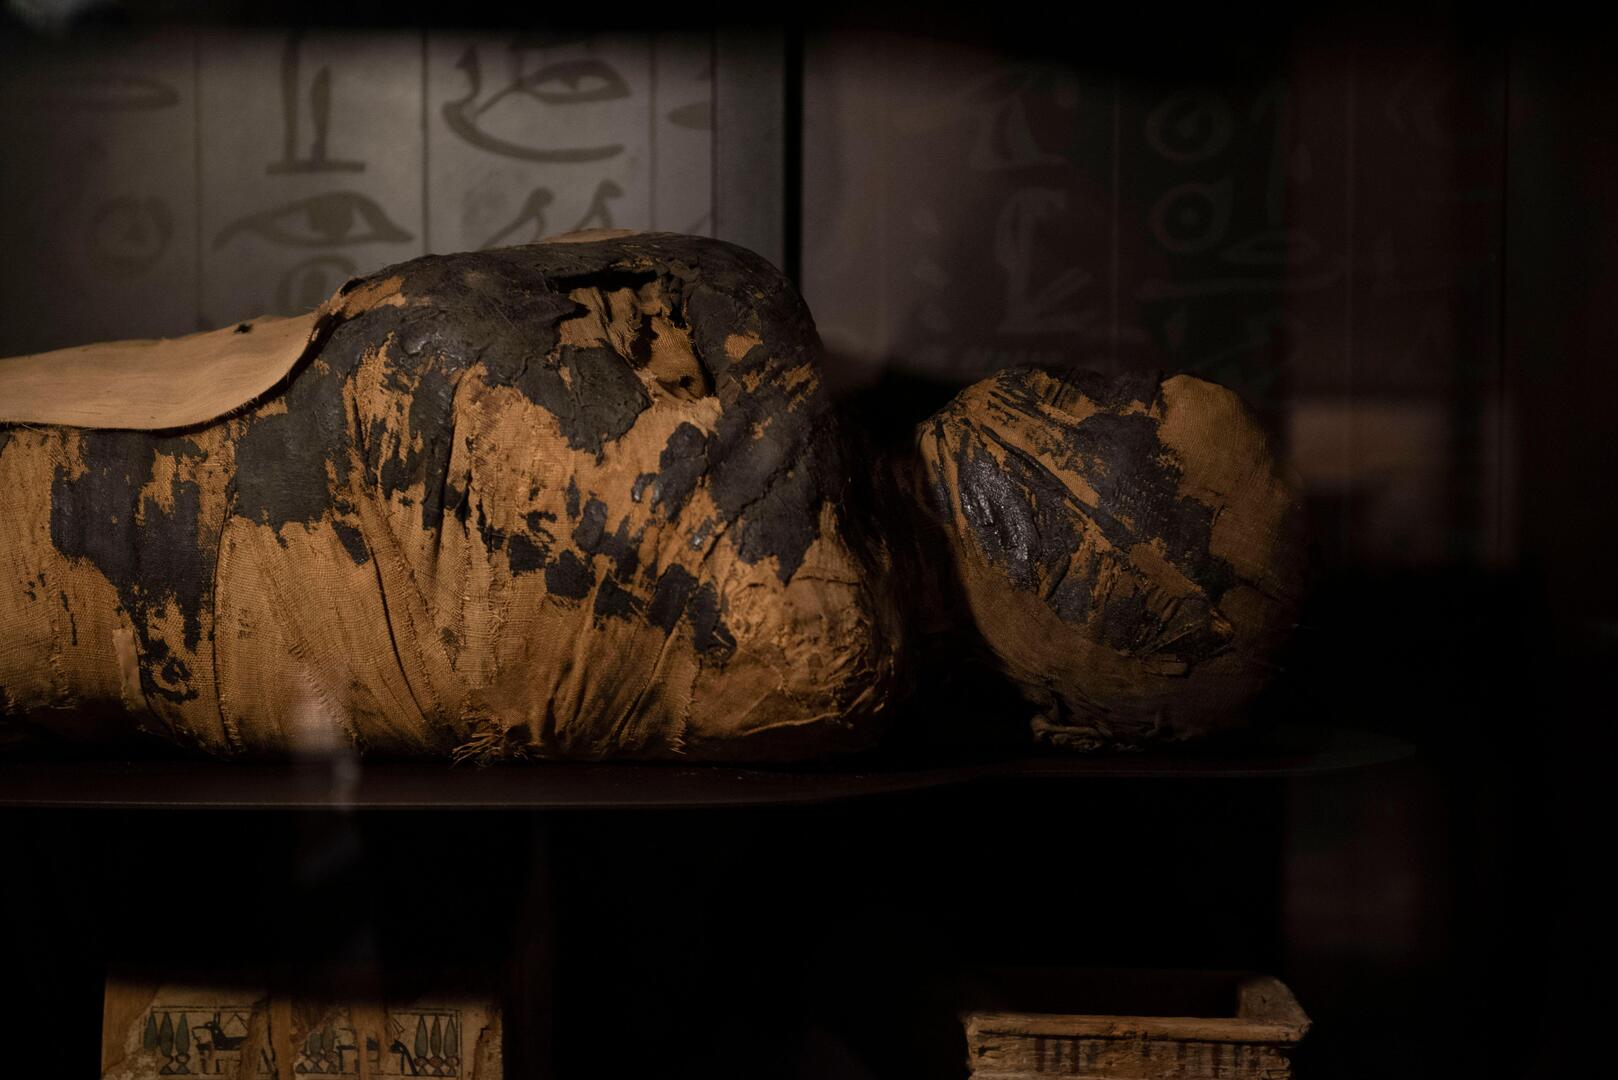 العثور على مرض نادر قاتل ربما أنهى حياة أول مومياء مصرية حامل مكتشفة في العالم